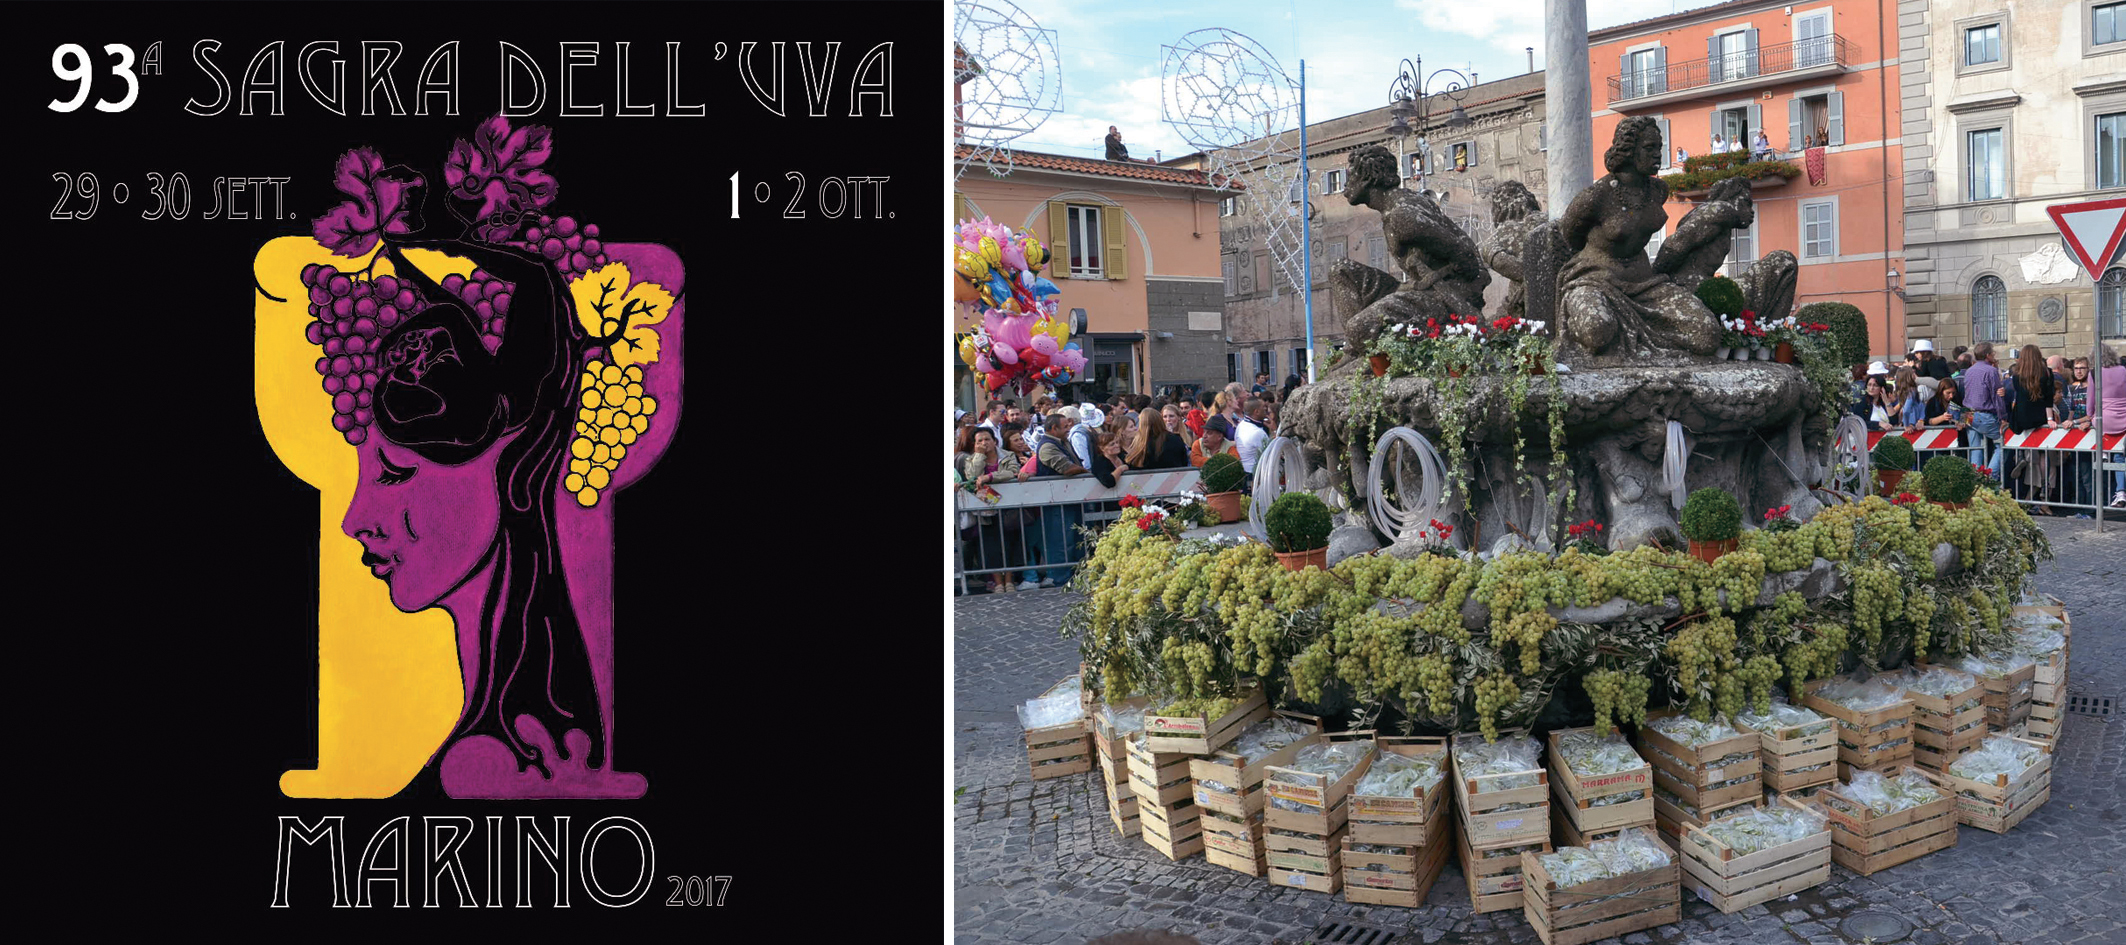 Benvenuti a Marino La sorridente città del vino ospita, dal 29 settembre al 2 ottobre, la 93° Sagra dell’uva. Tantissimi gli appuntamenti dal corteo storico al miracolo delle fontane che danno vino